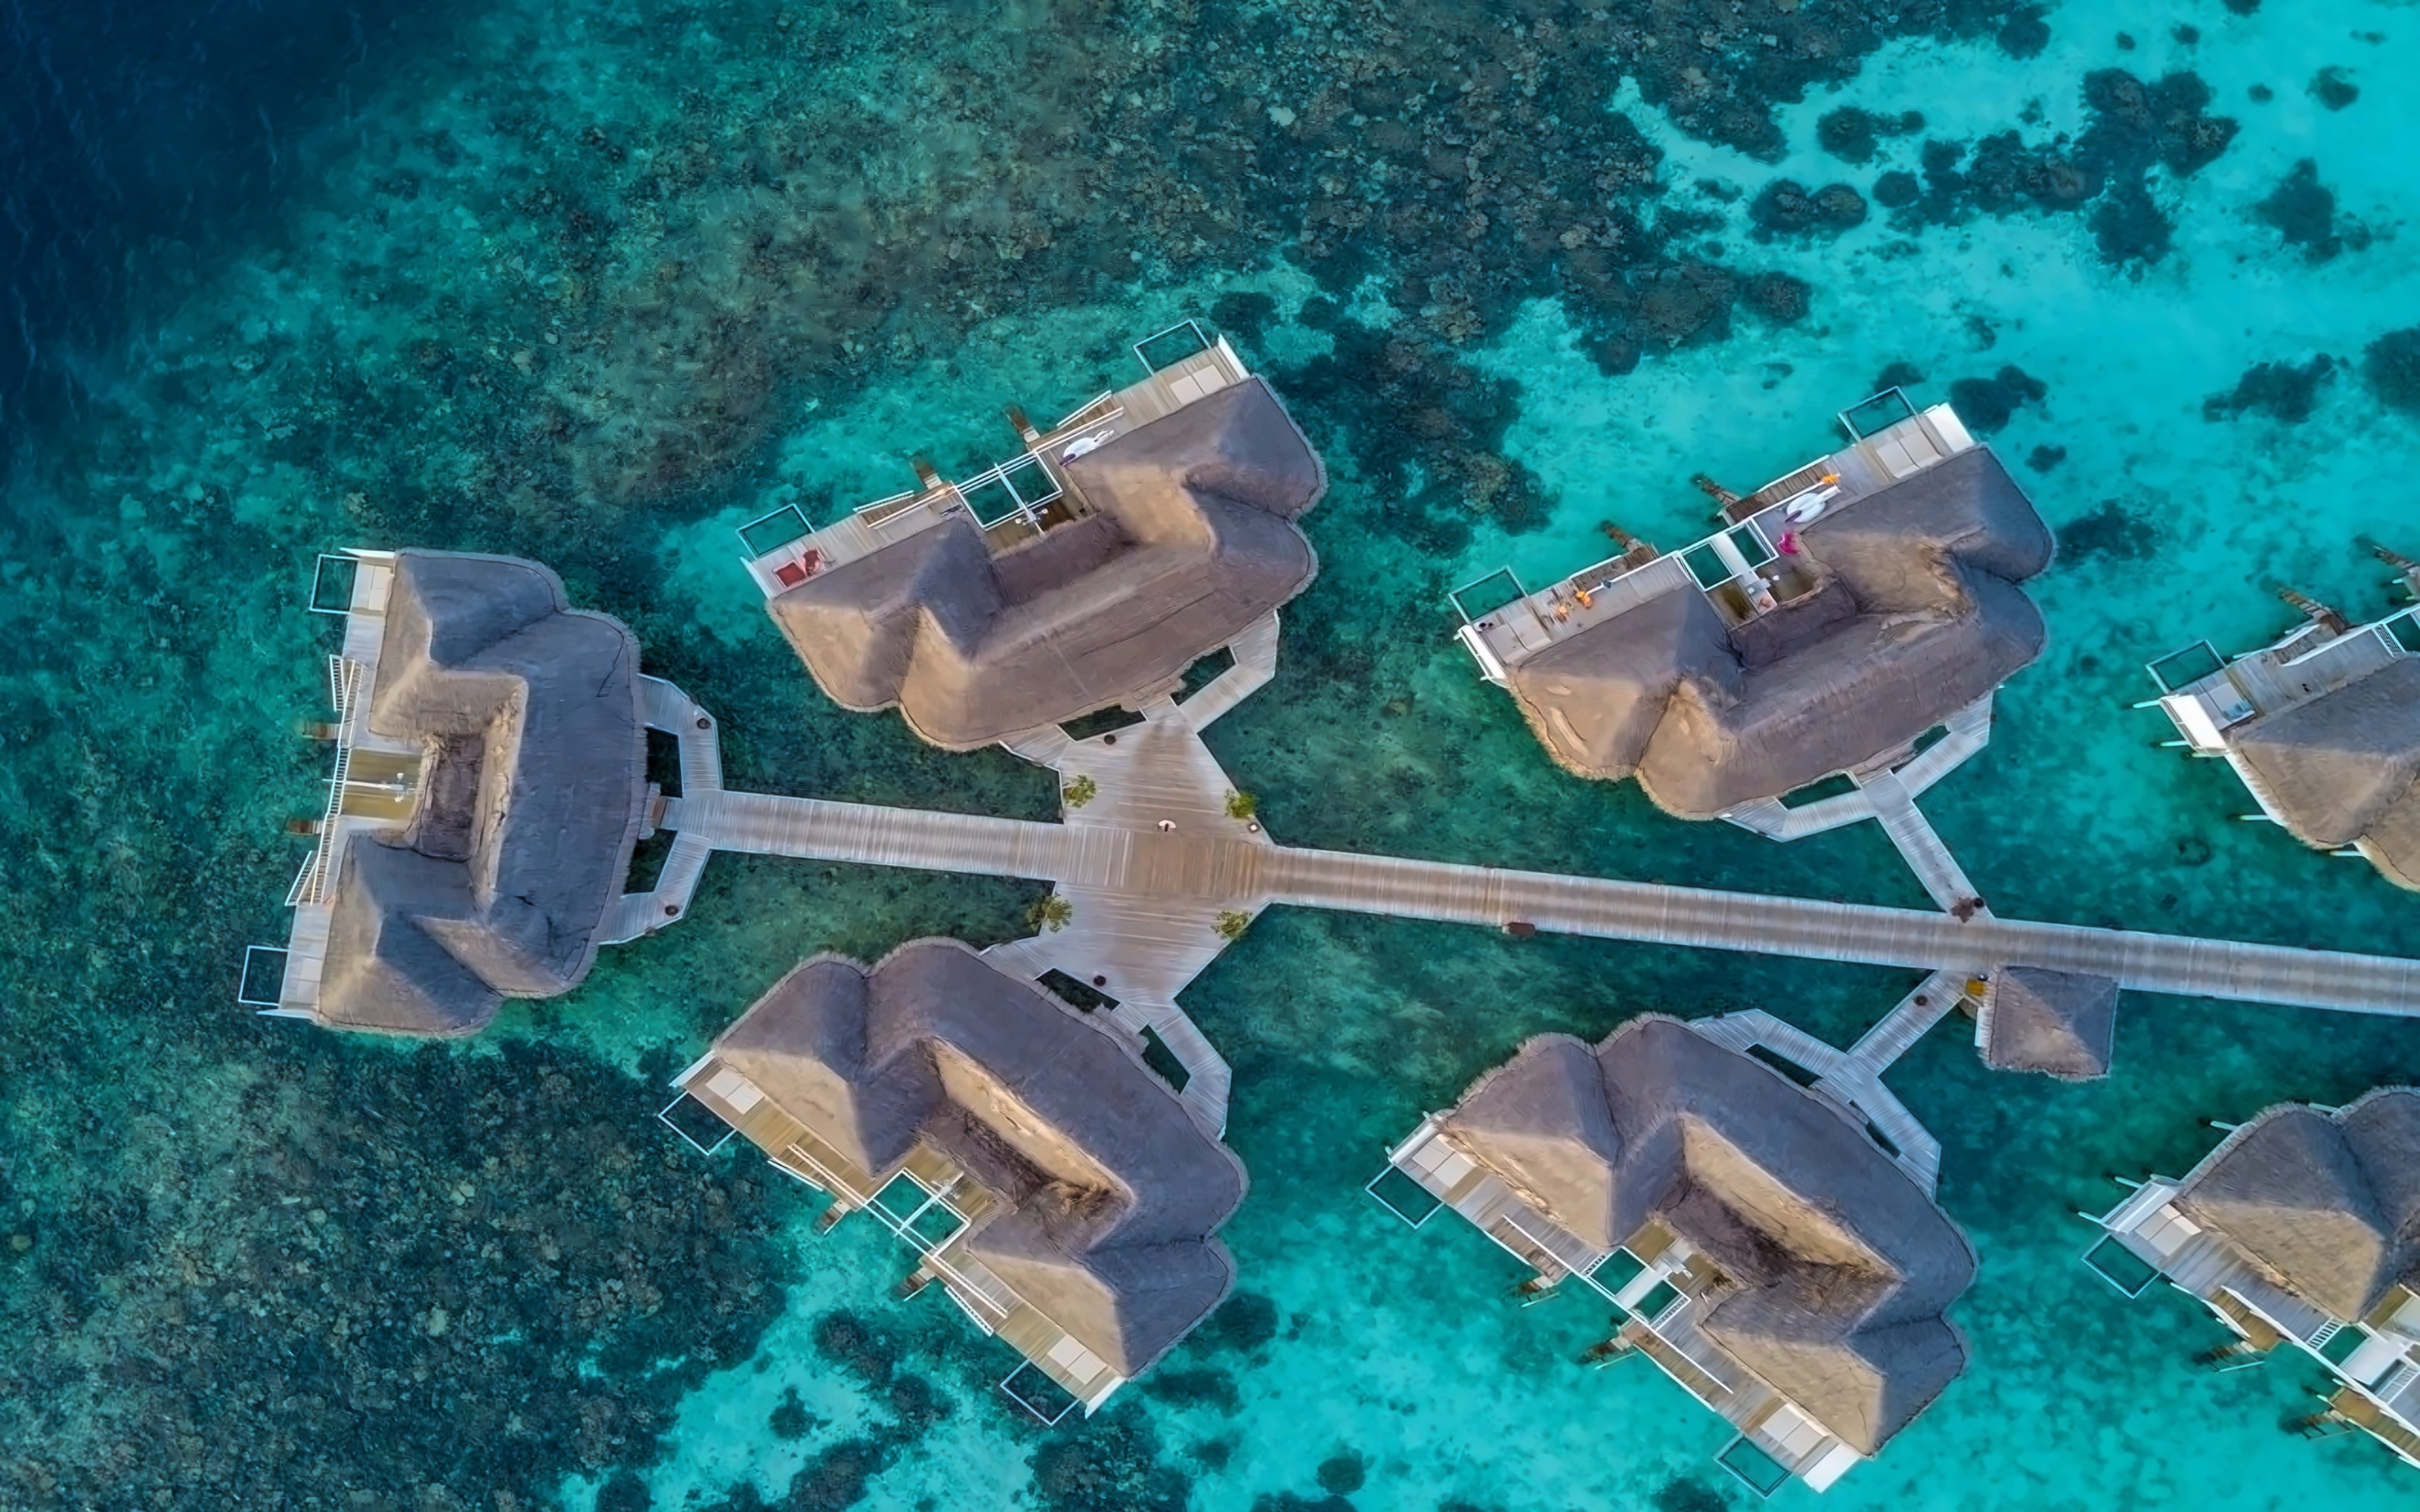 CENTARA GRAND ISLAND MALDIVES